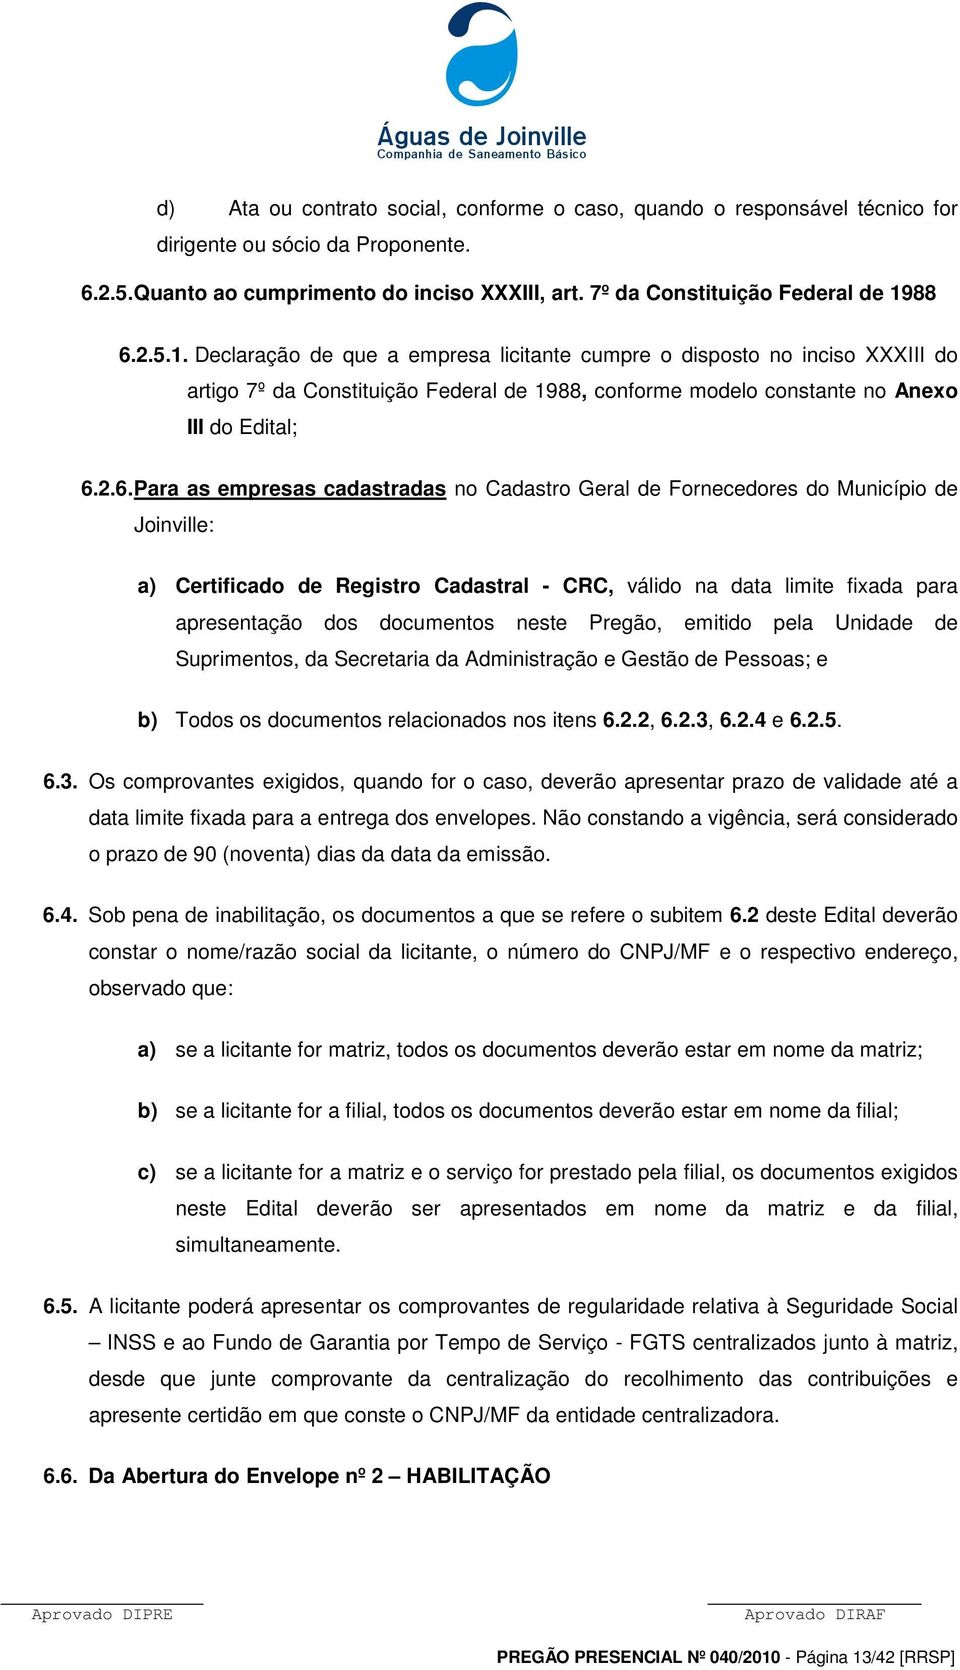 2.6. Para as empresas cadastradas no Cadastro Geral de Fornecedores do Município de Joinville: a) Certificado de Registro Cadastral - CRC, válido na data limite fixada para apresentação dos